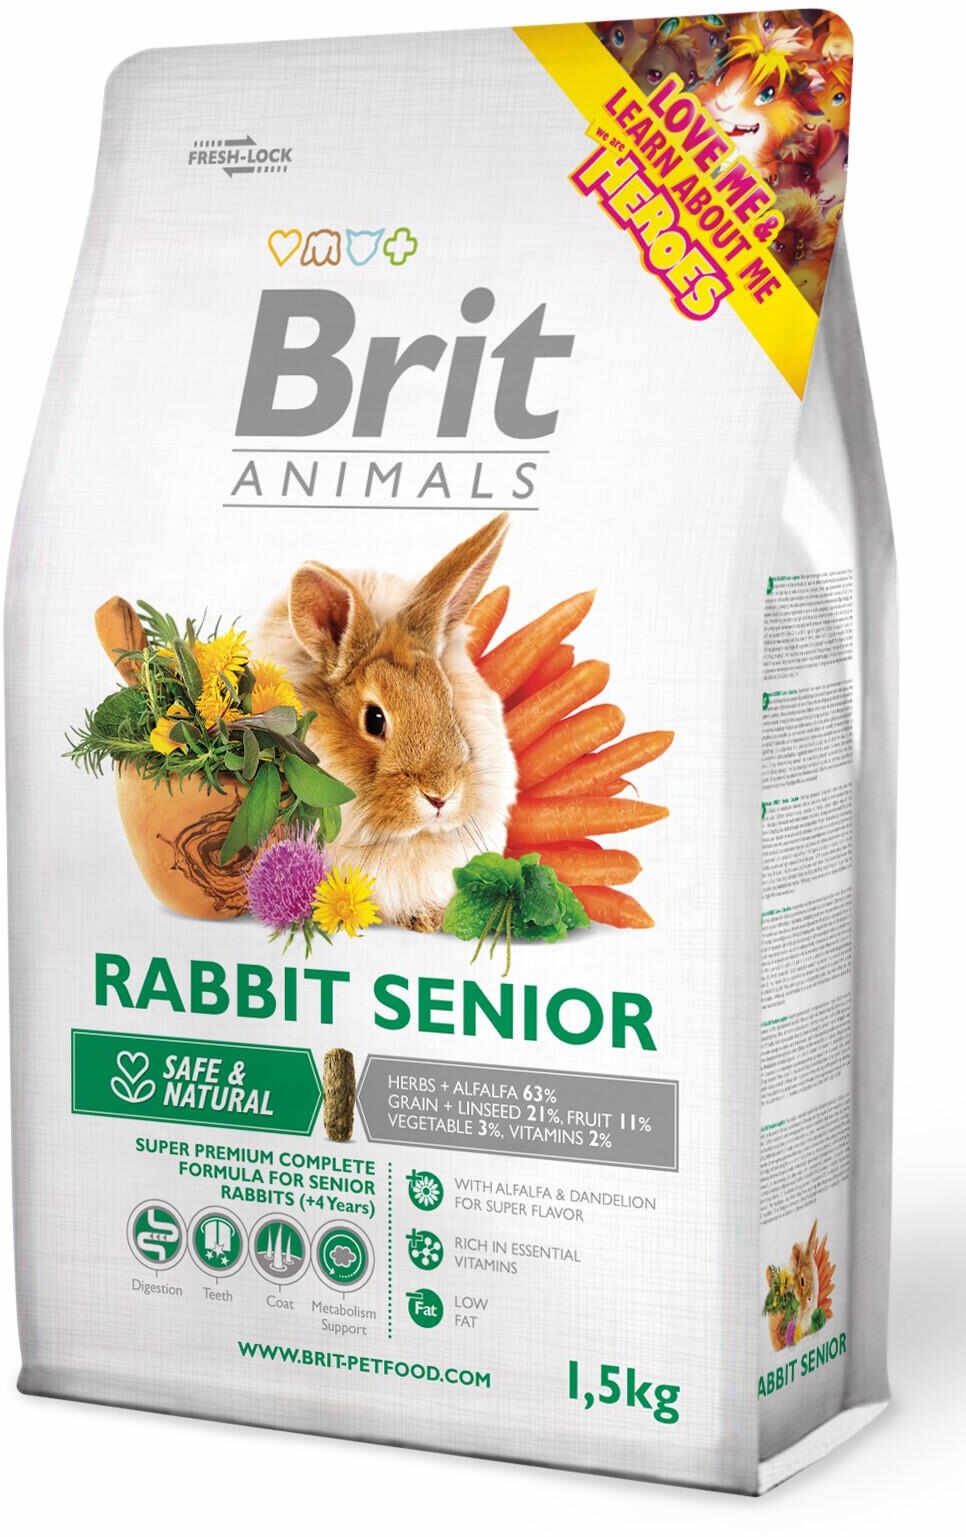 BRIT ANIMALS Rabbit SENIOR, hrană completă pentru iepuri seniori